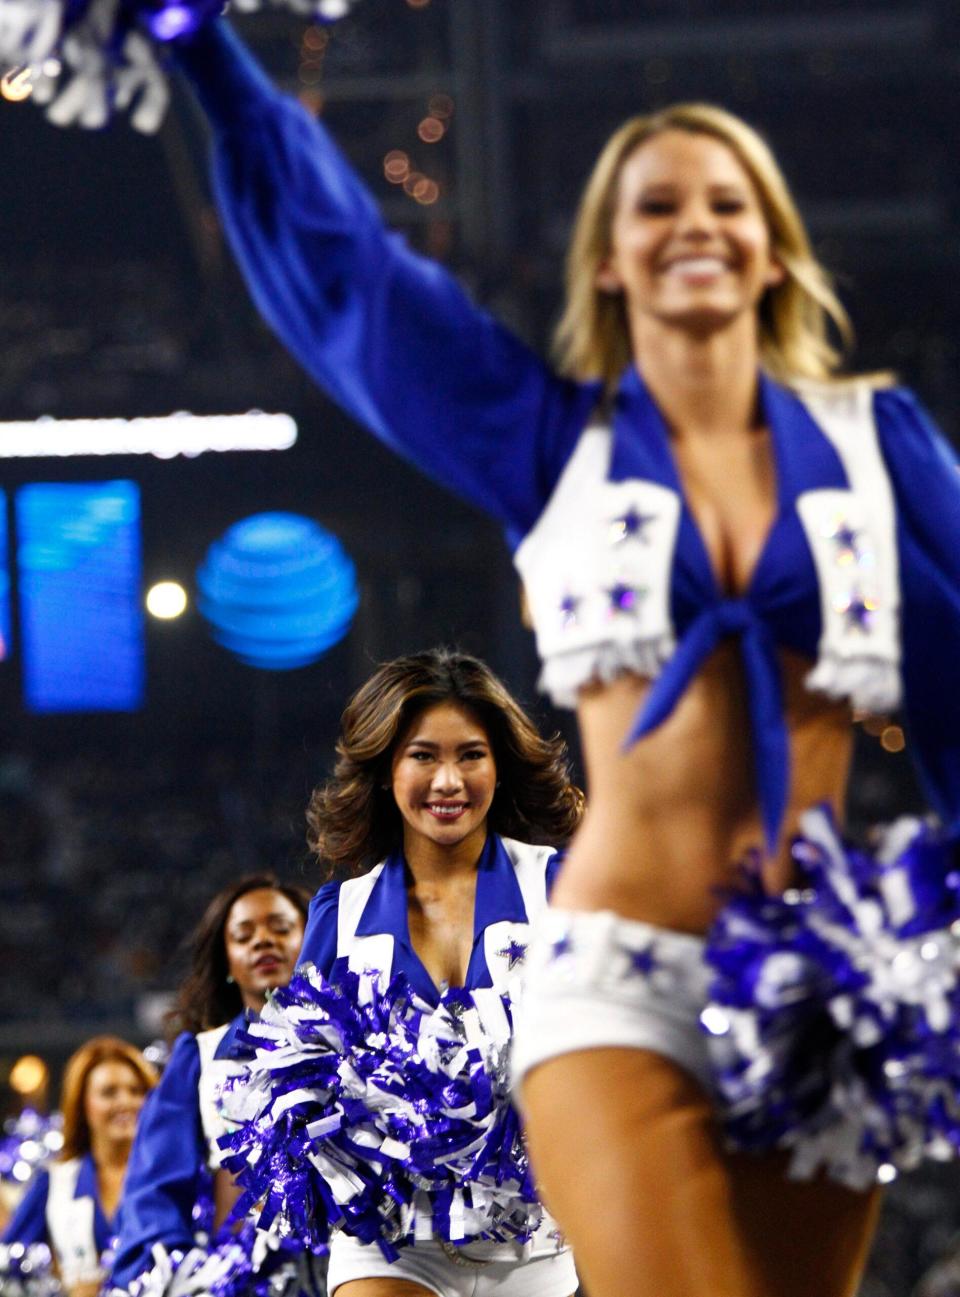 Zespół Dallas Cowboys Cheerleaders występuje podczas meczu The Dallas Cowboys vs Washington Redskins